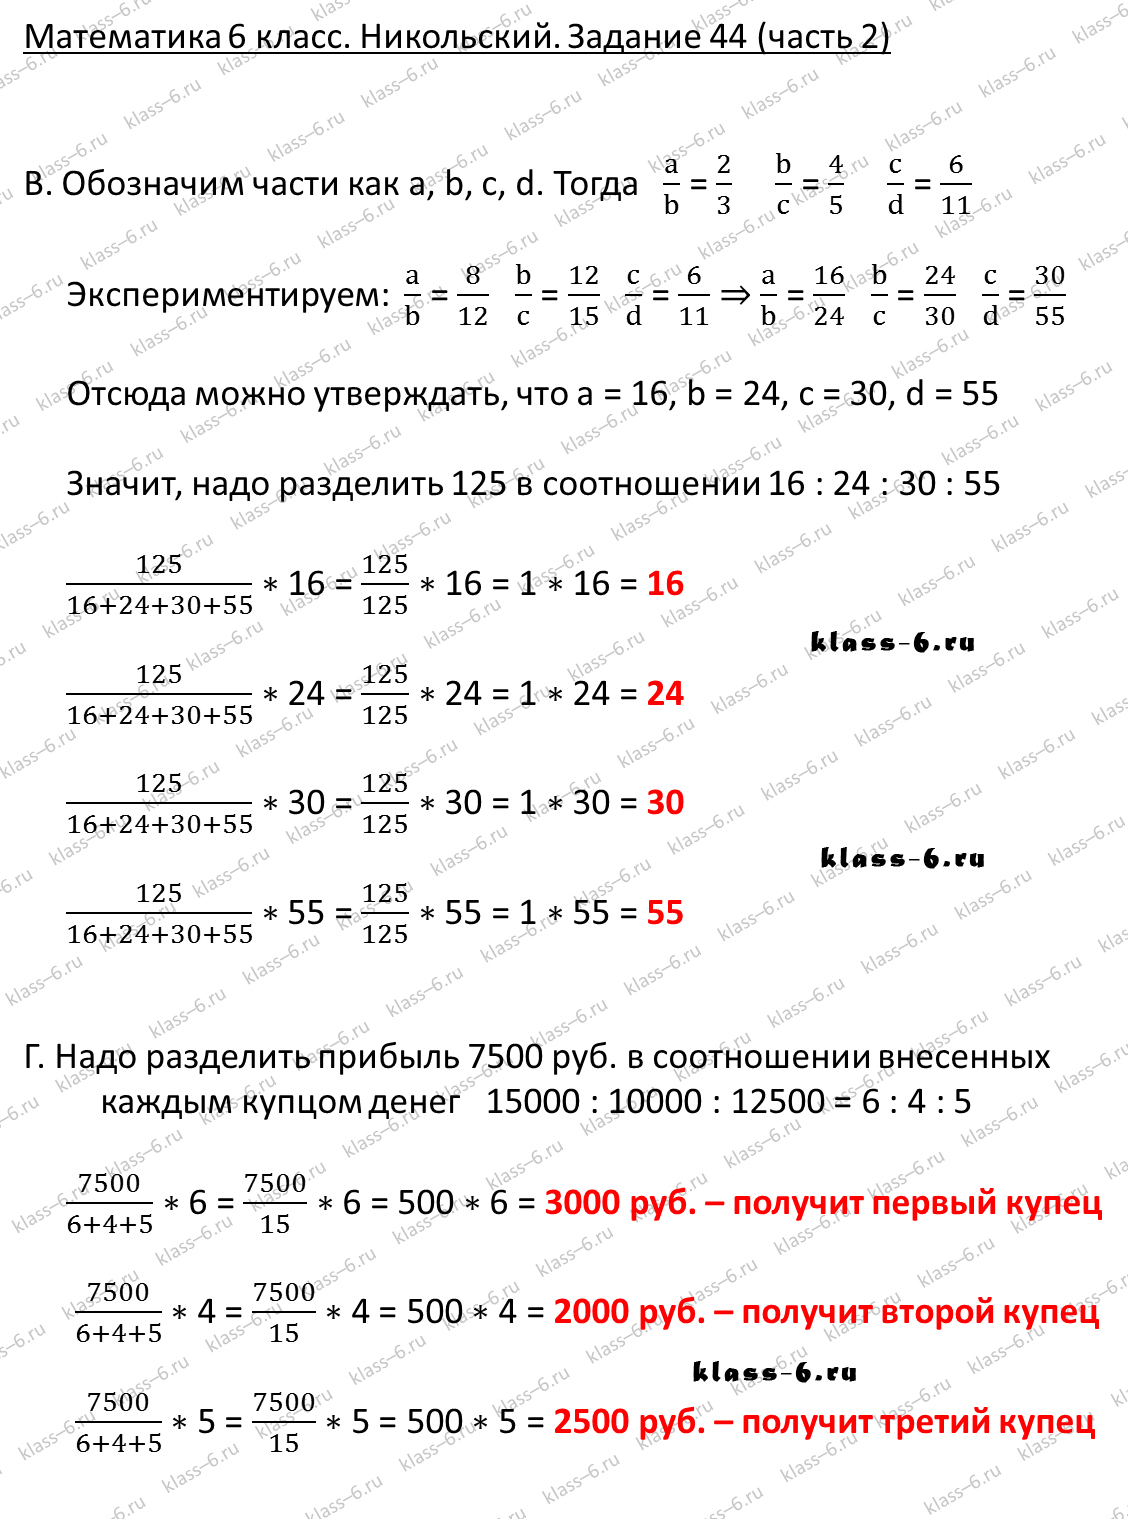 Кисилев учебник математики 5-6 класс